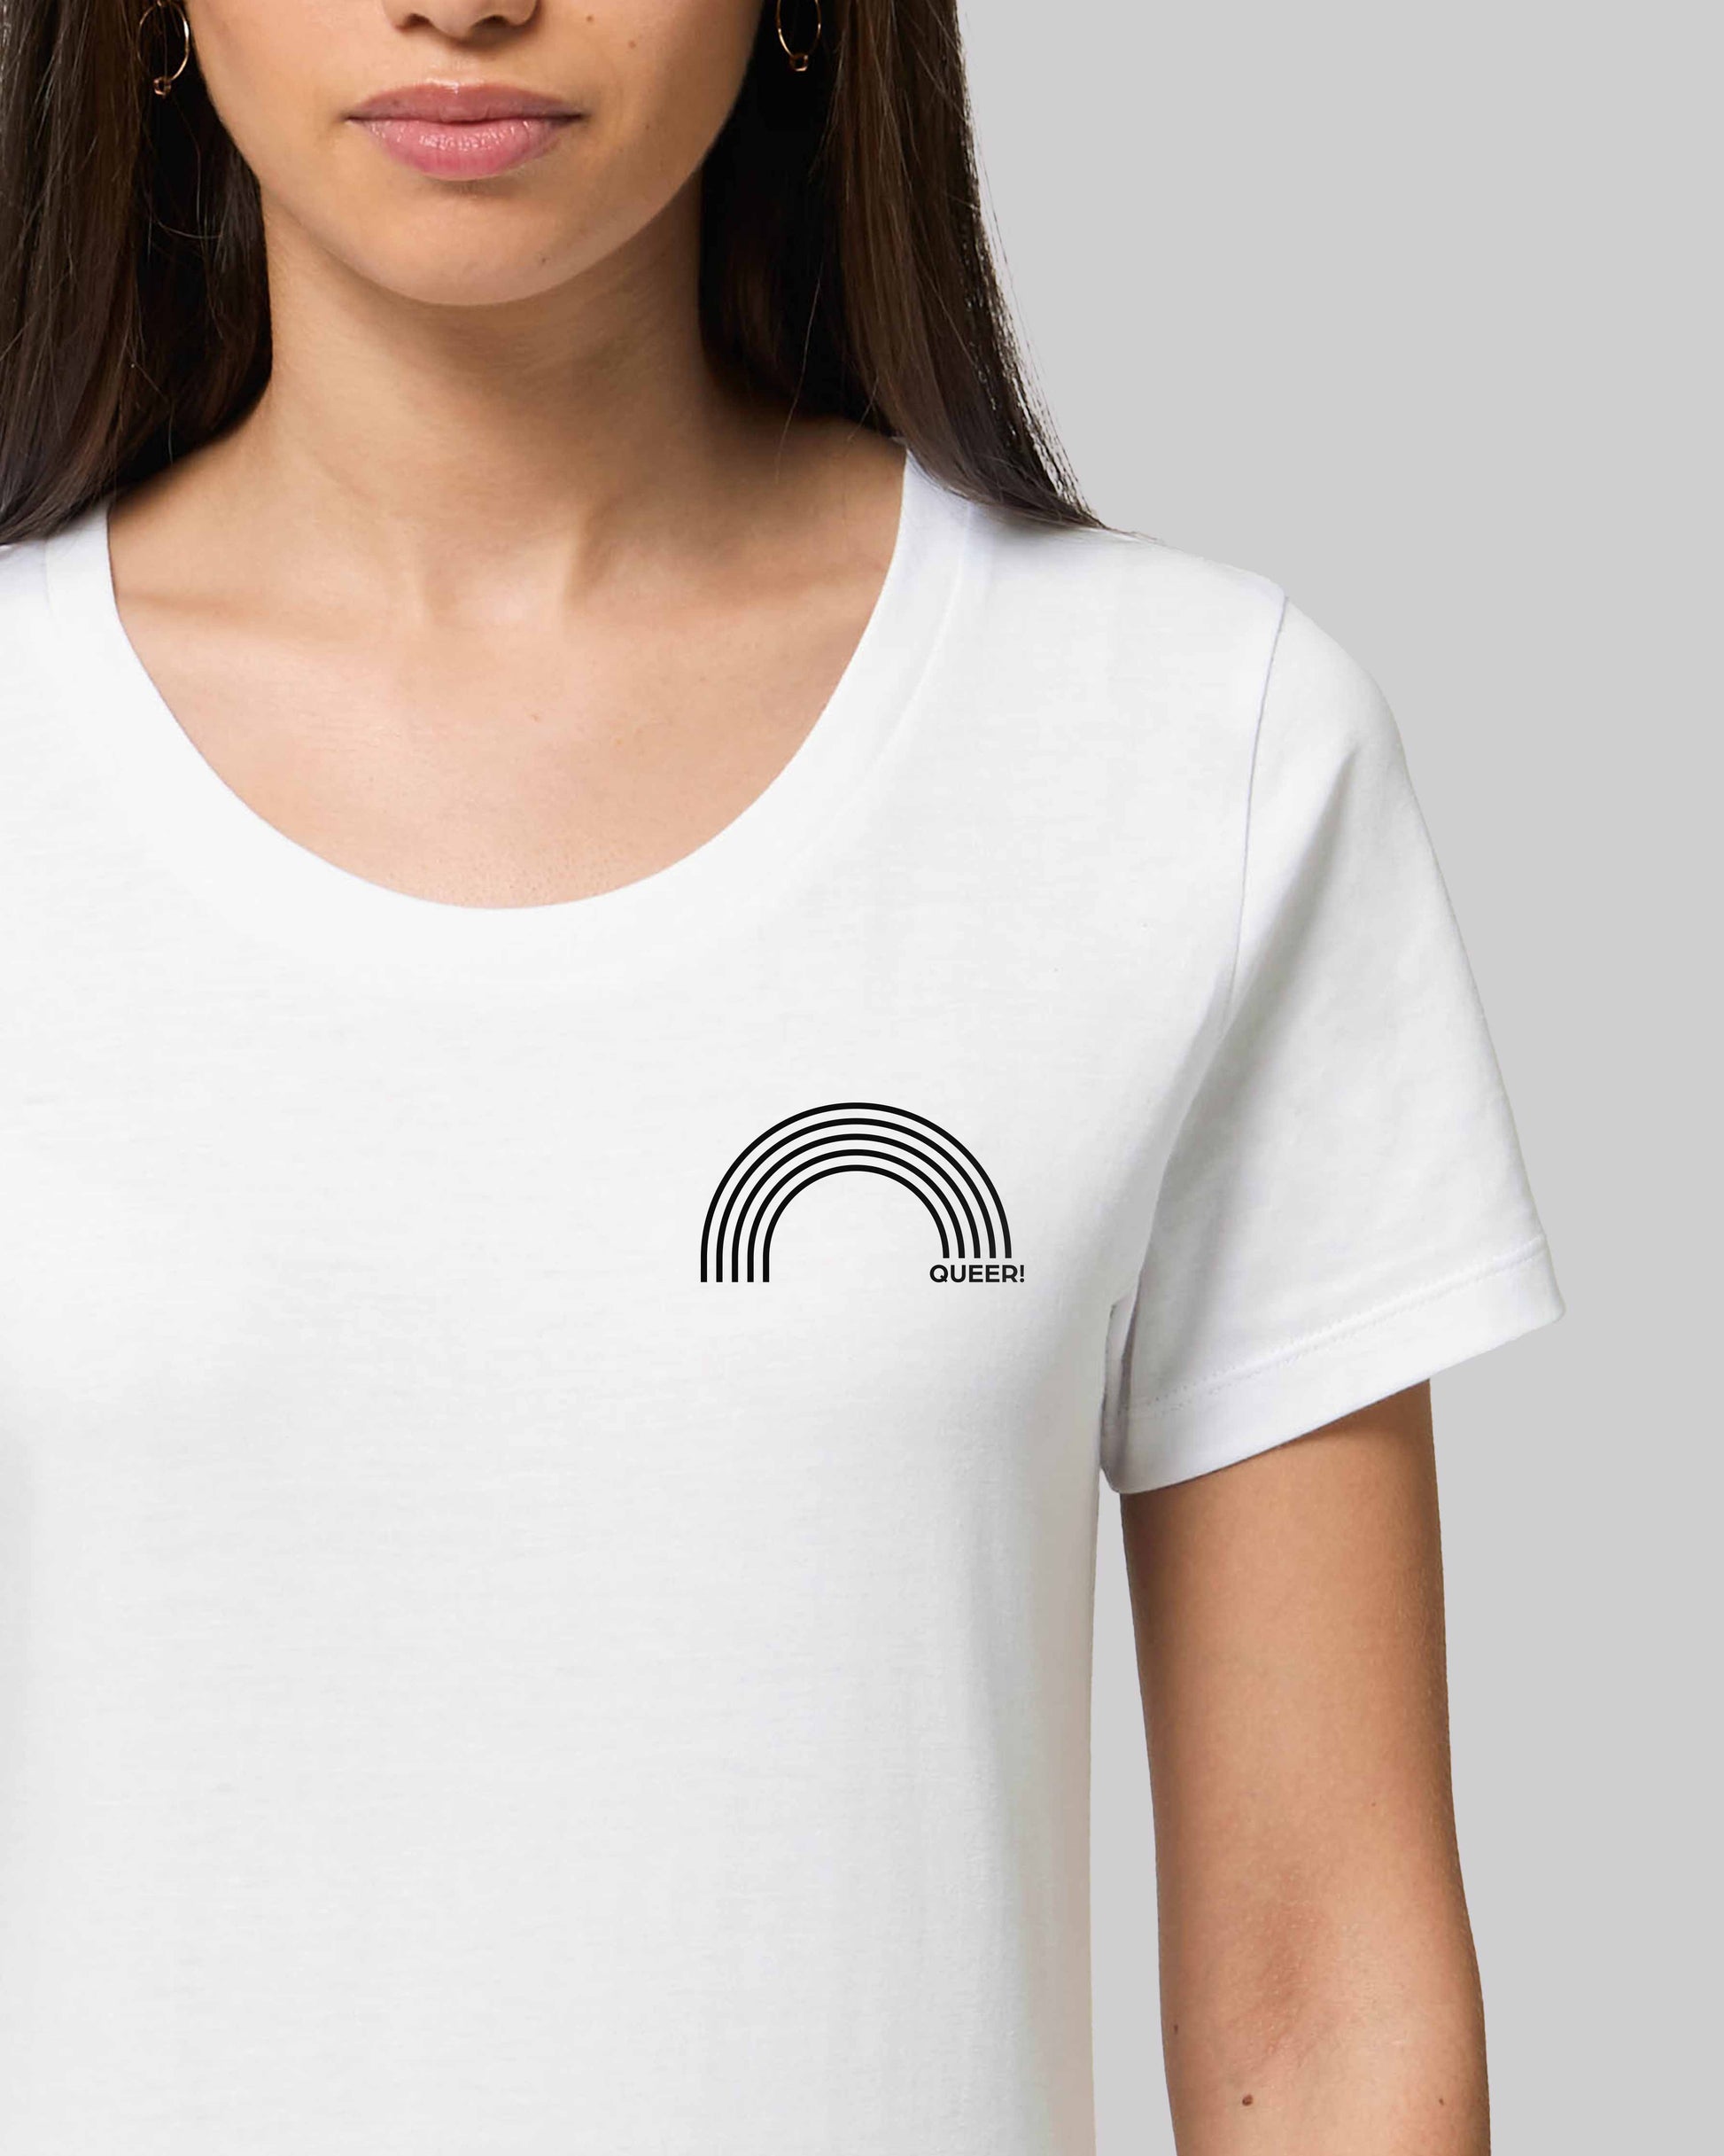 EINHORST® Organic Shirt tailliert in "Weiß" mit dem Motiv "queer Regenbogen" in der Kombination schwarzer Regenbogen mit schwarzer Schrift, Bild von weiblicher Person mit Shirt